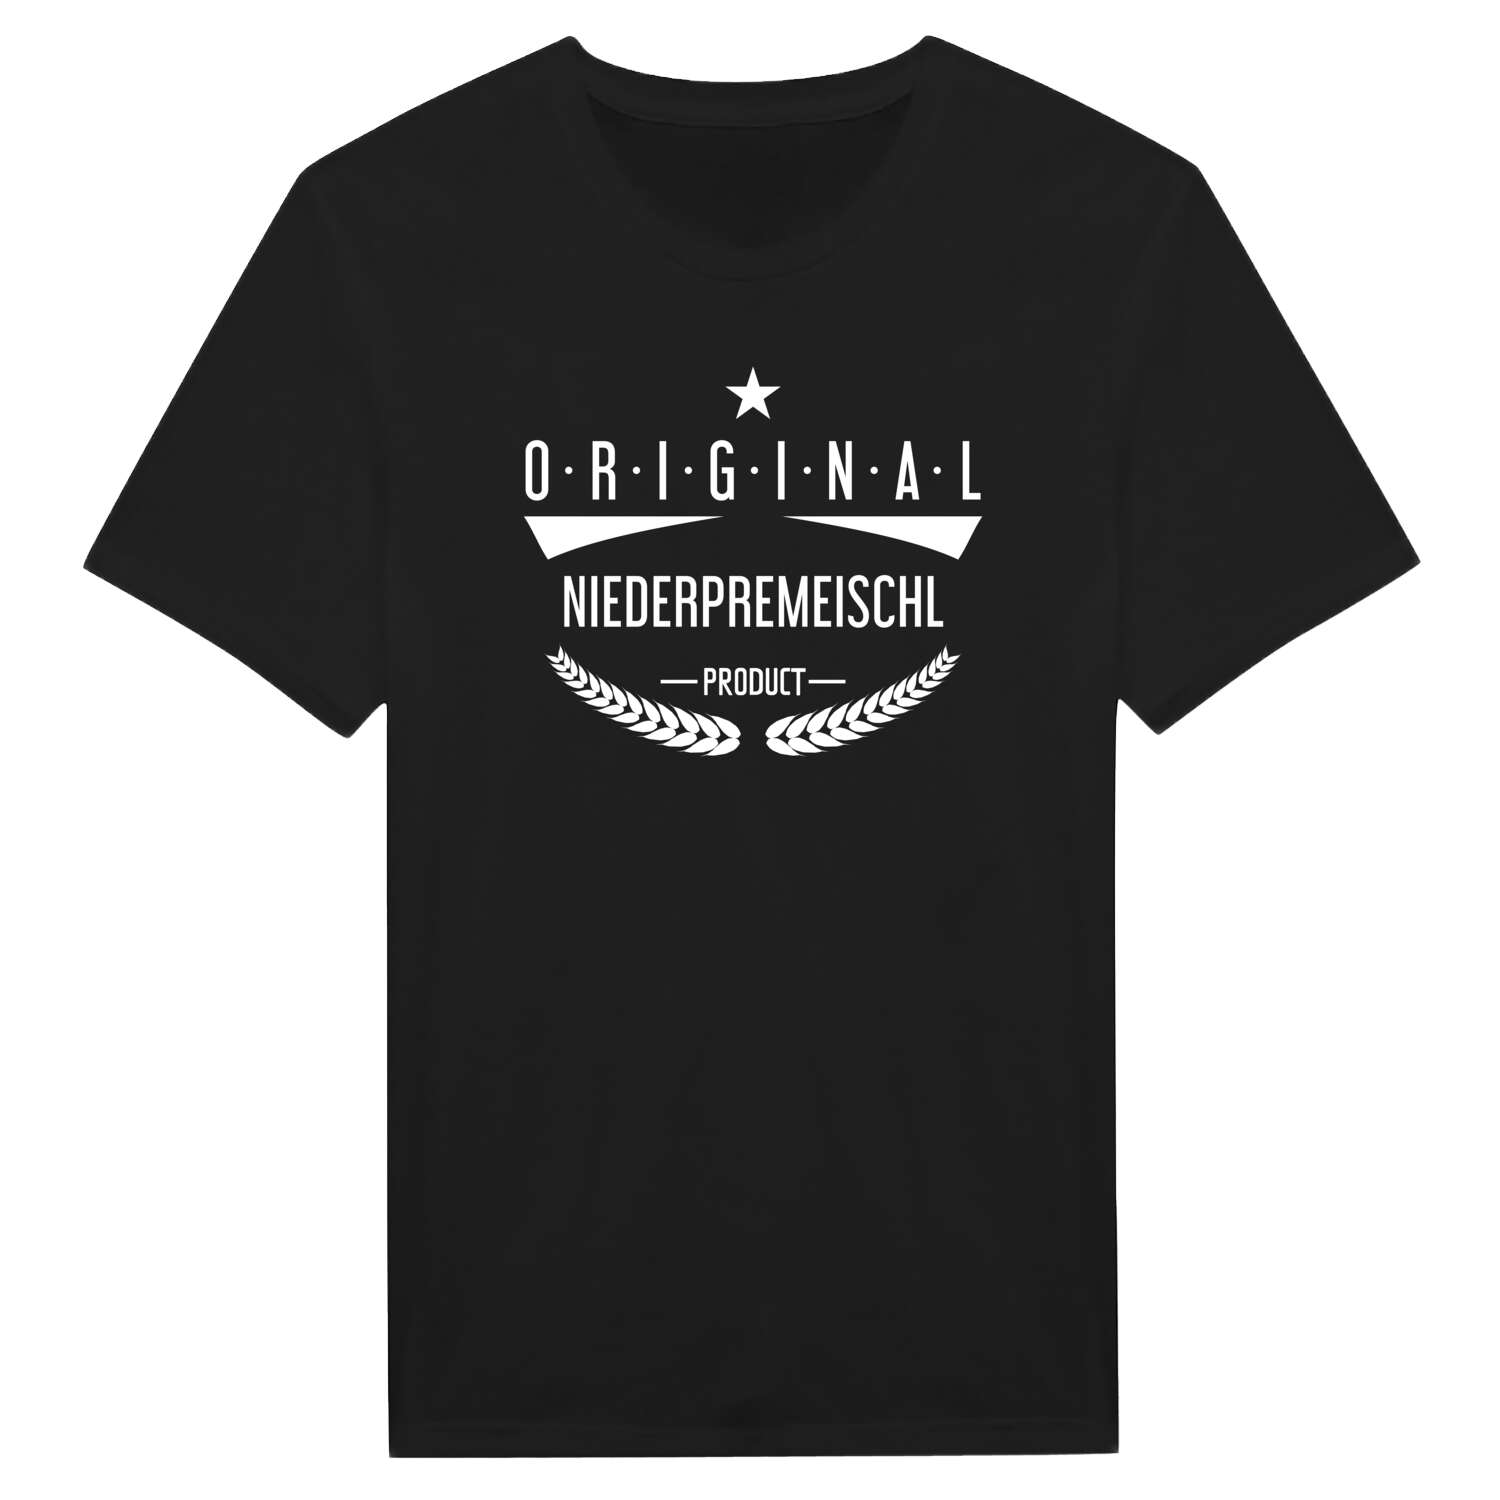 Niederpremeischl T-Shirt »Original Product«